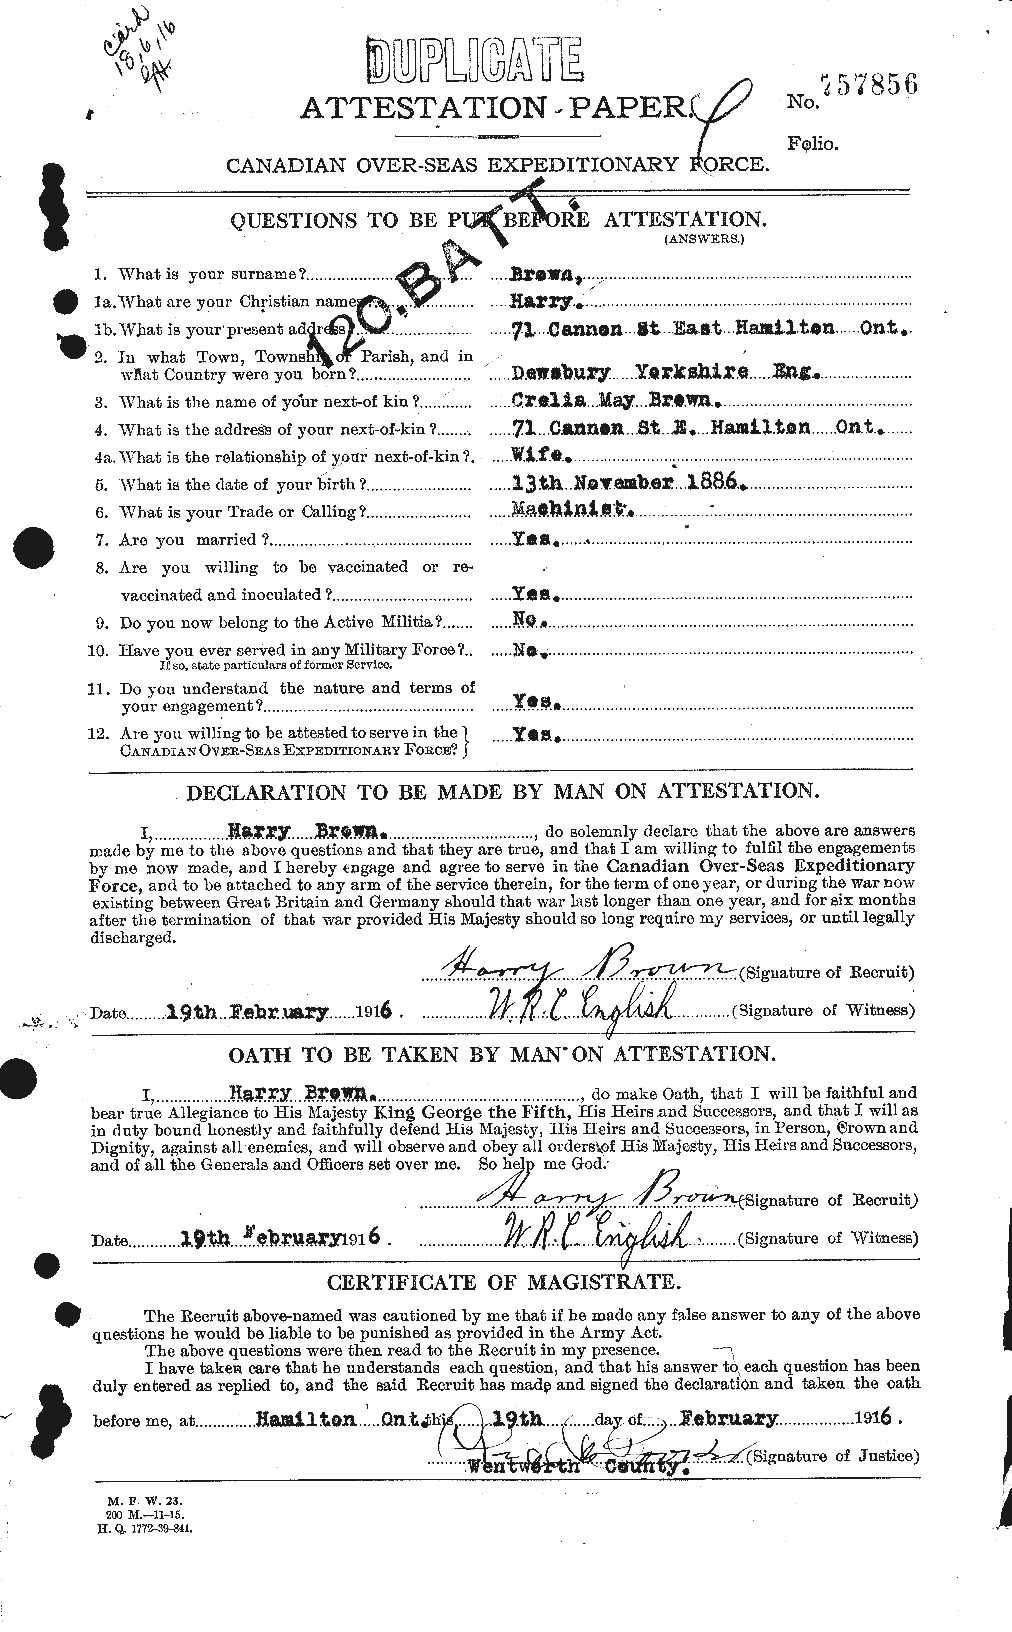 Dossiers du Personnel de la Première Guerre mondiale - CEC 265396a